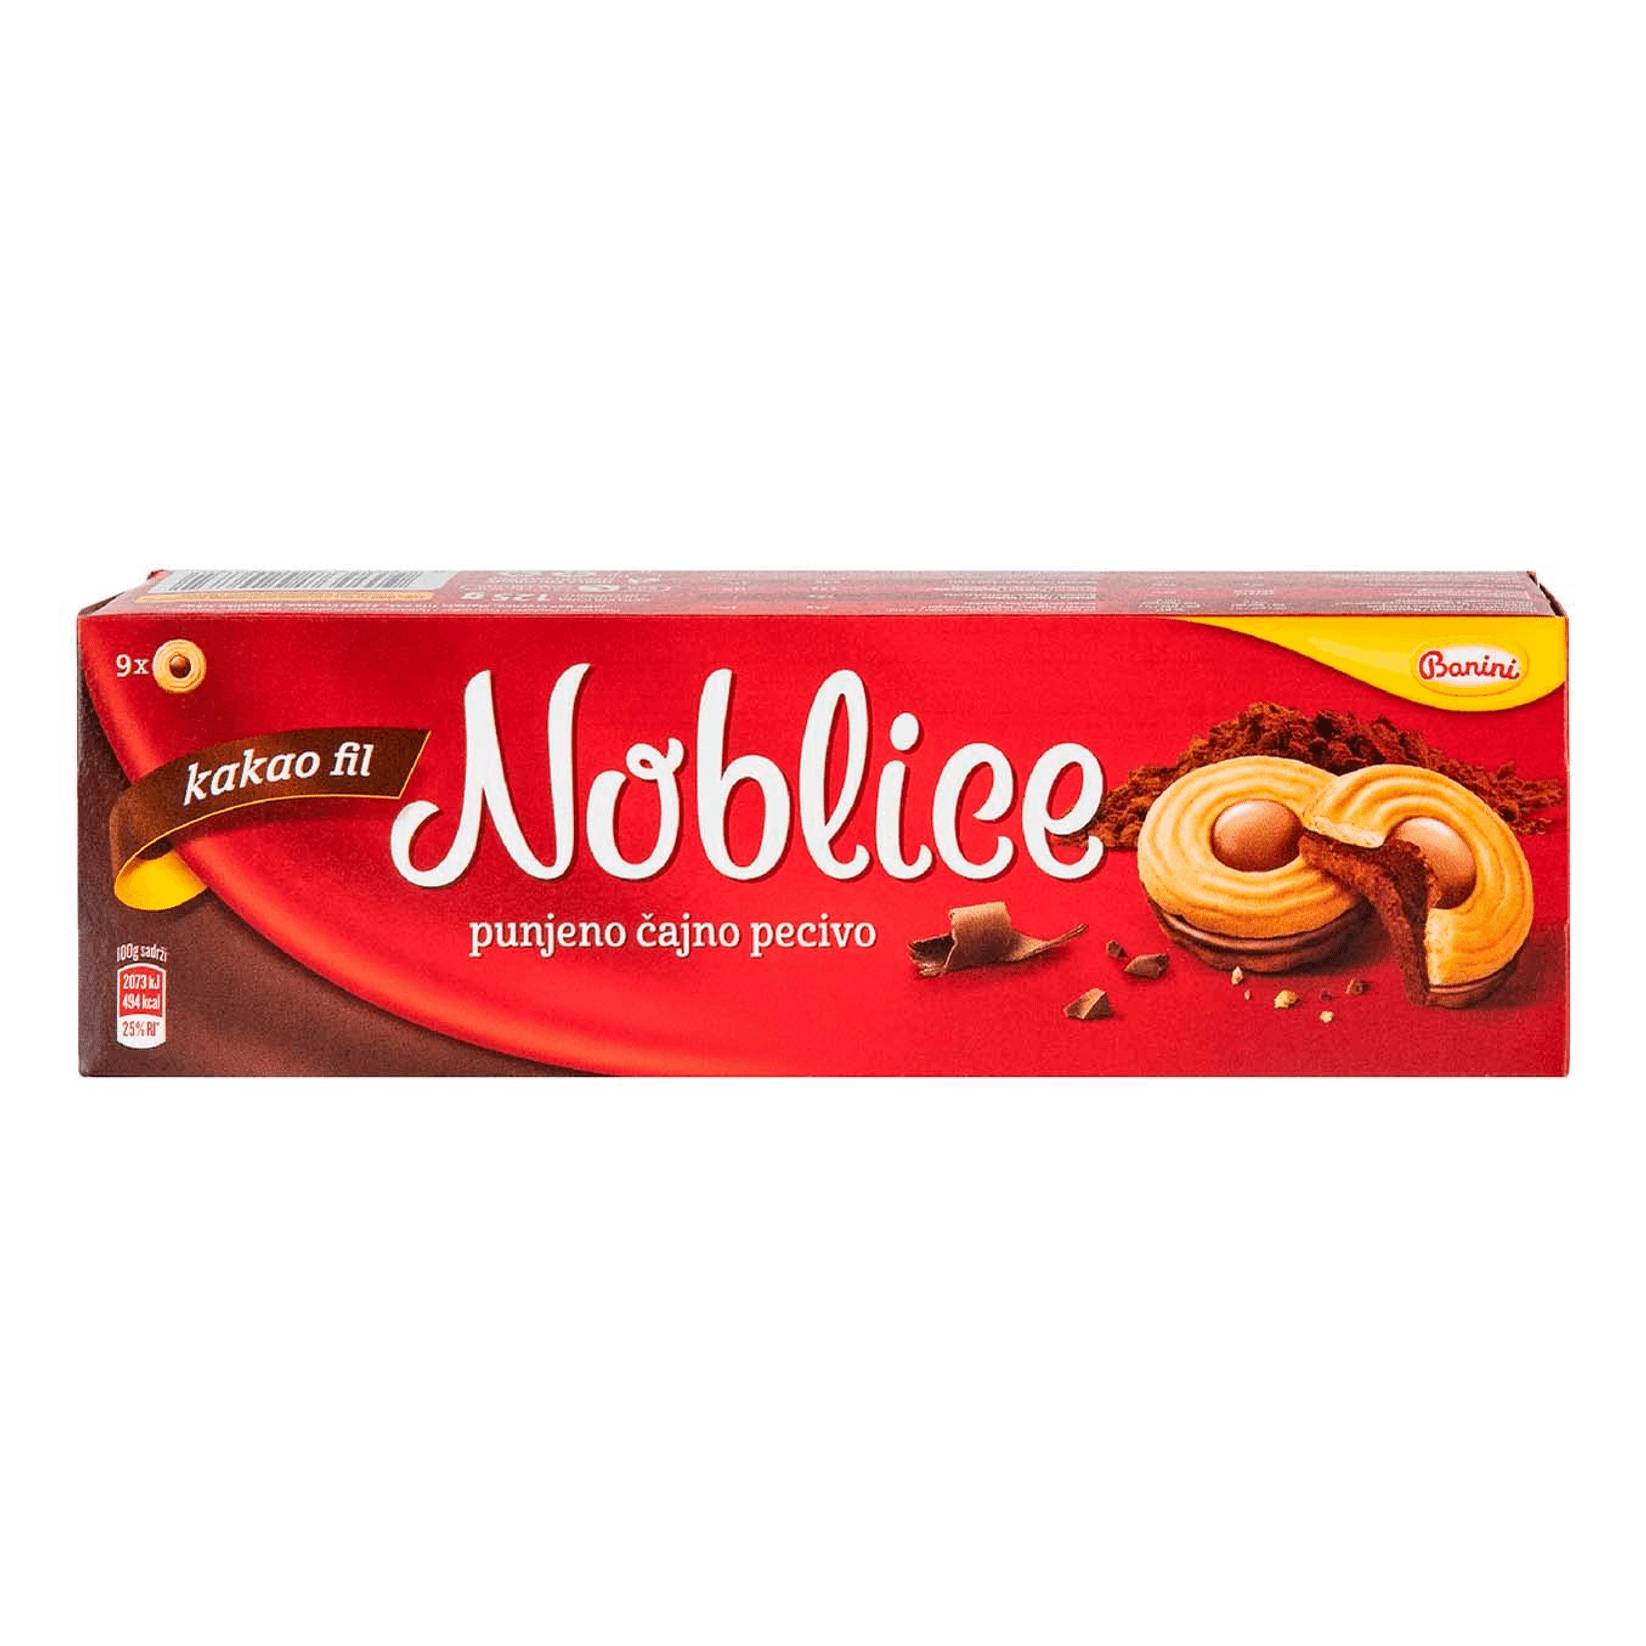 Печенье Noblice с какао начинкой, 125 г печенье акконд трио с какао и начинкой шоколадный брауни 65 г